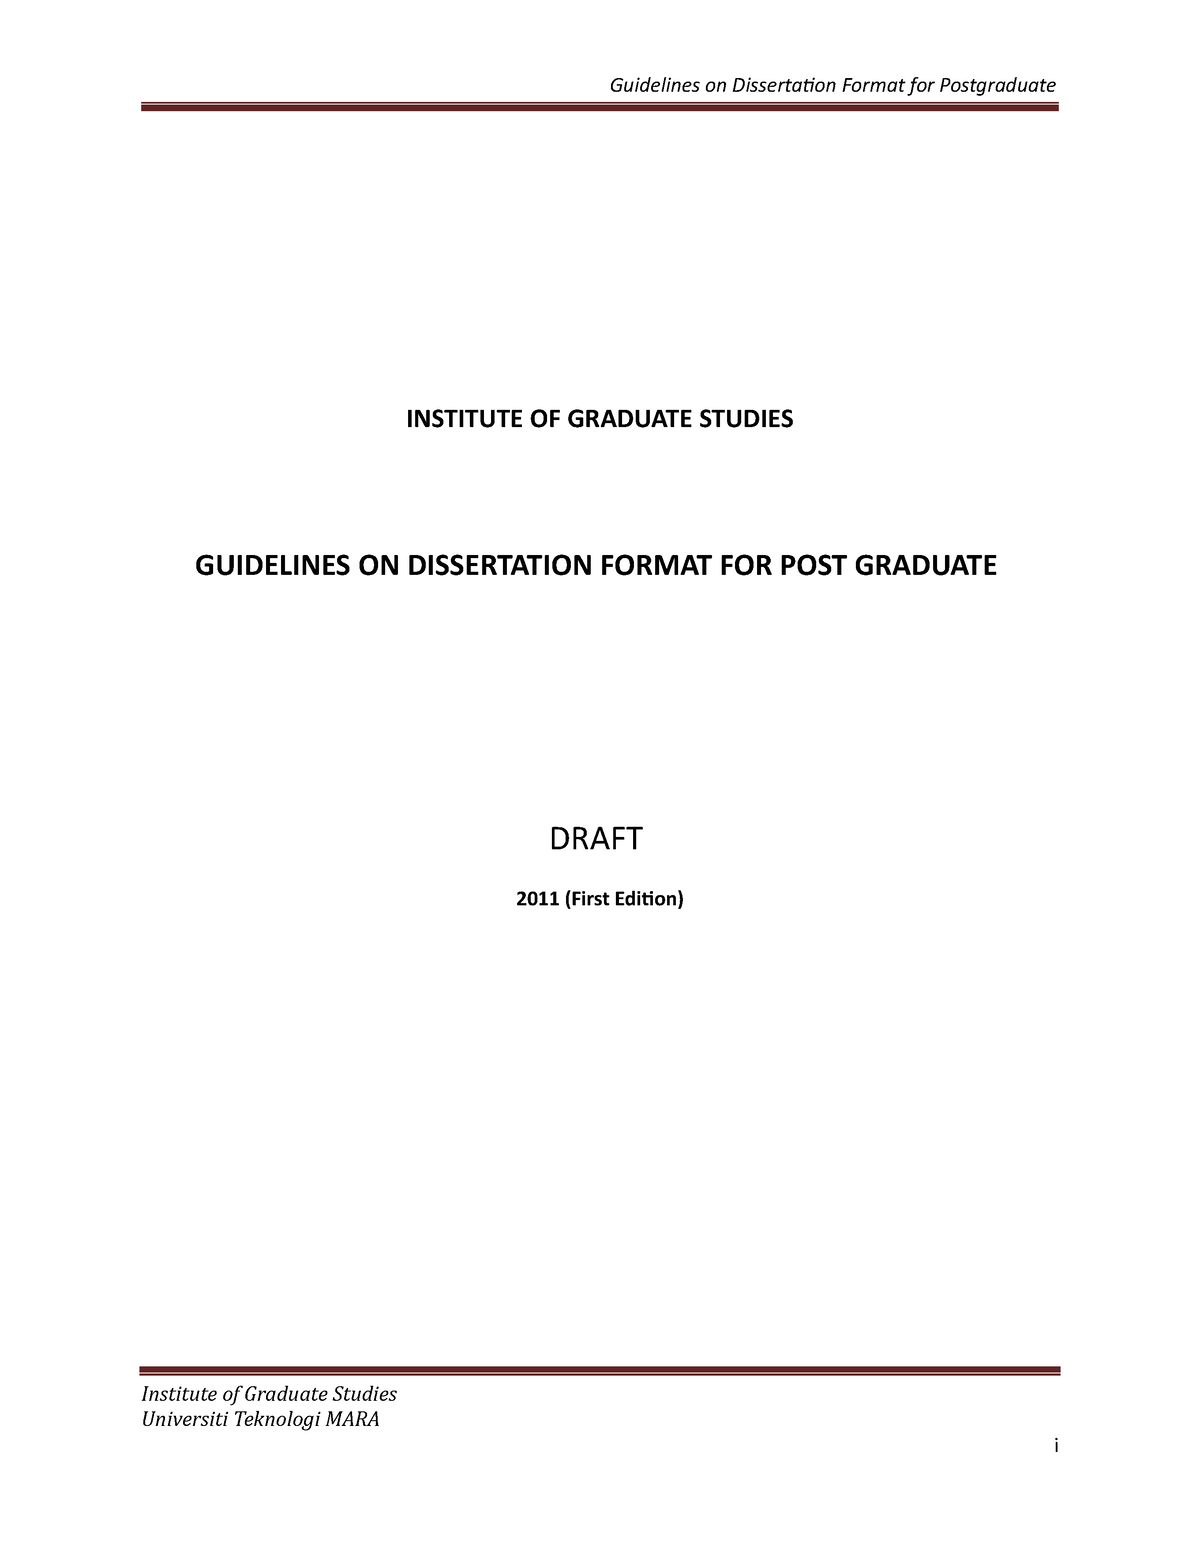 Format dissertation template INSTITUTE OF GRADUATE STUDIES